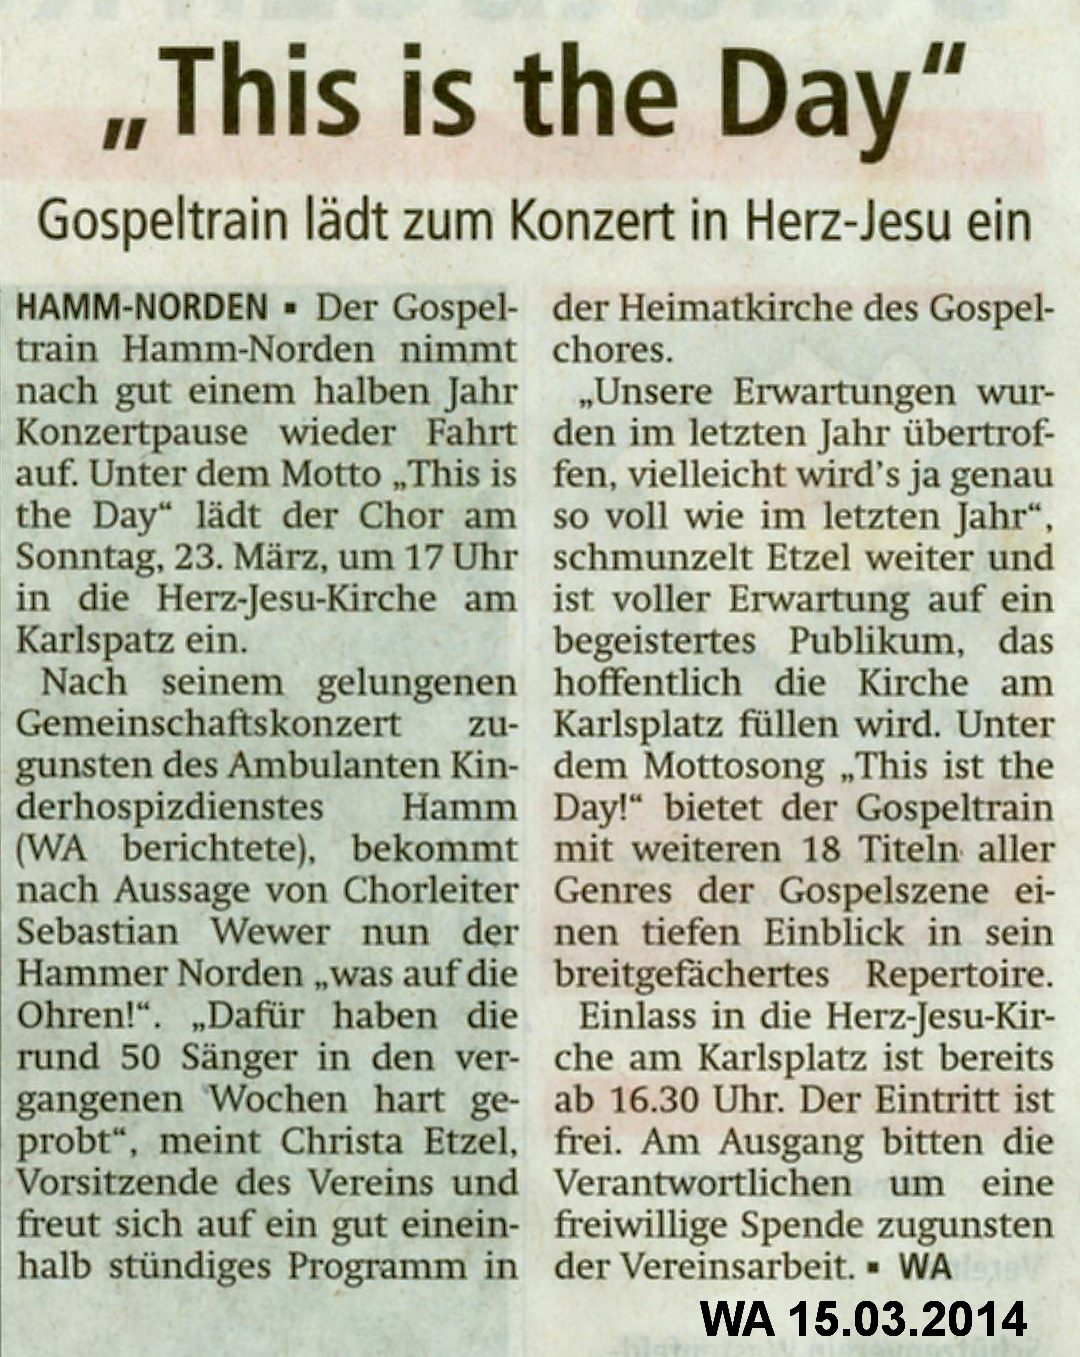 © Westfälischer Anzeiger, Hamm, 15.03.2014